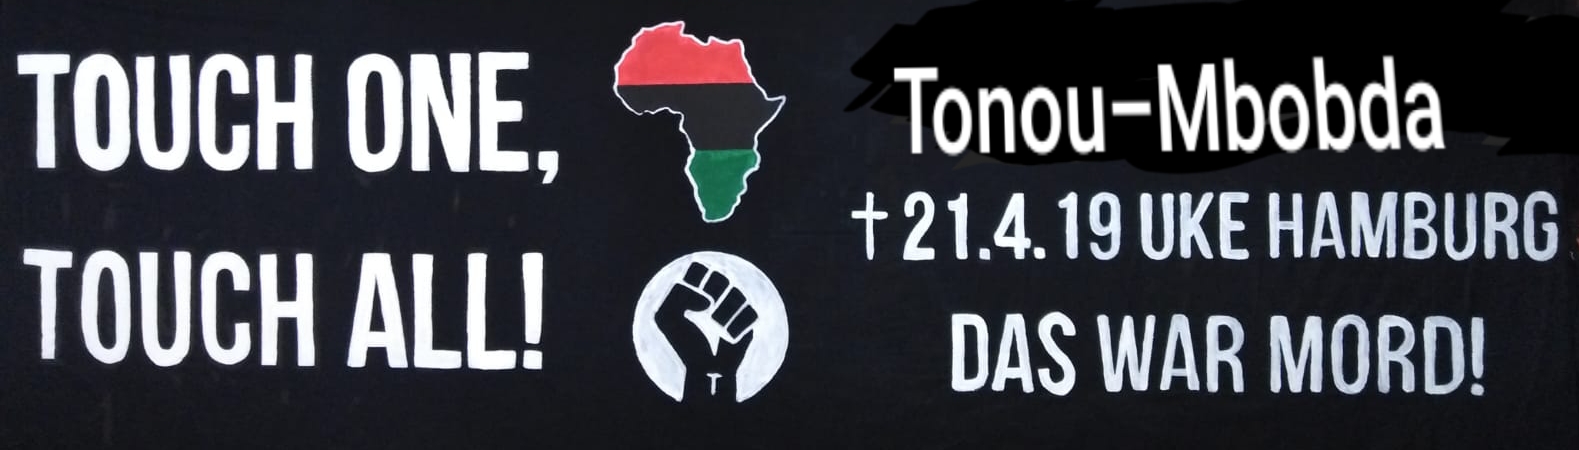 Aufruf zur Demonstration am Tag der Befreiung Afrikas